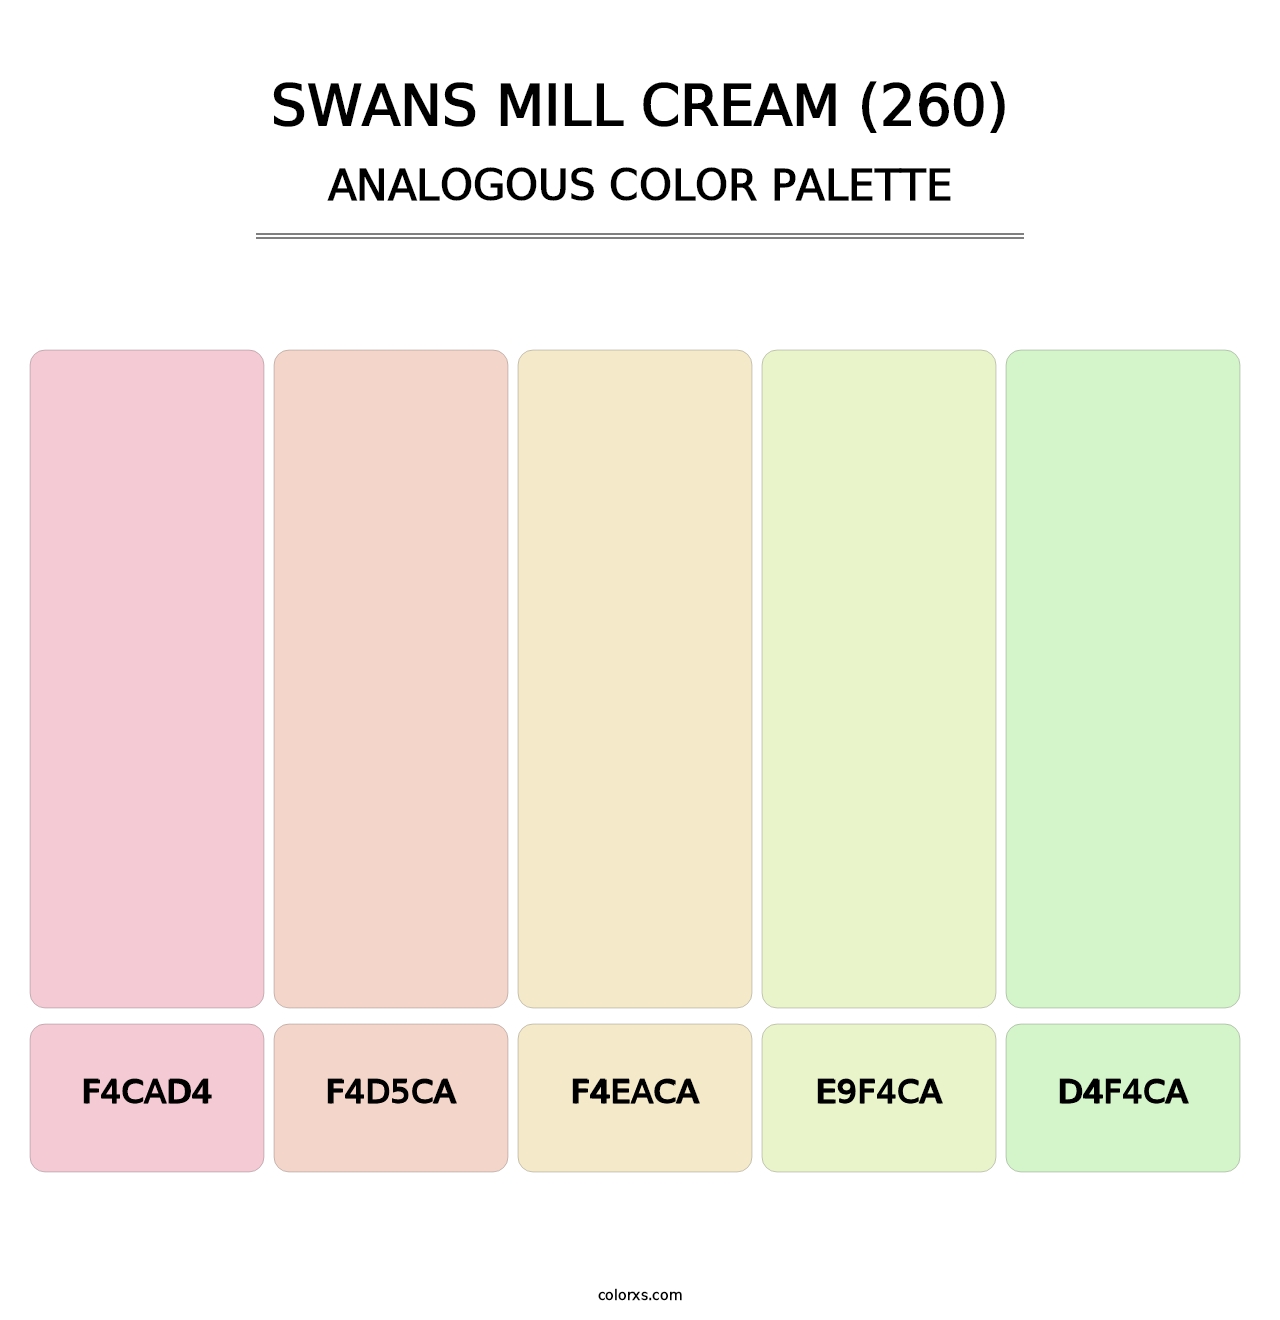 Swans Mill Cream (260) - Analogous Color Palette